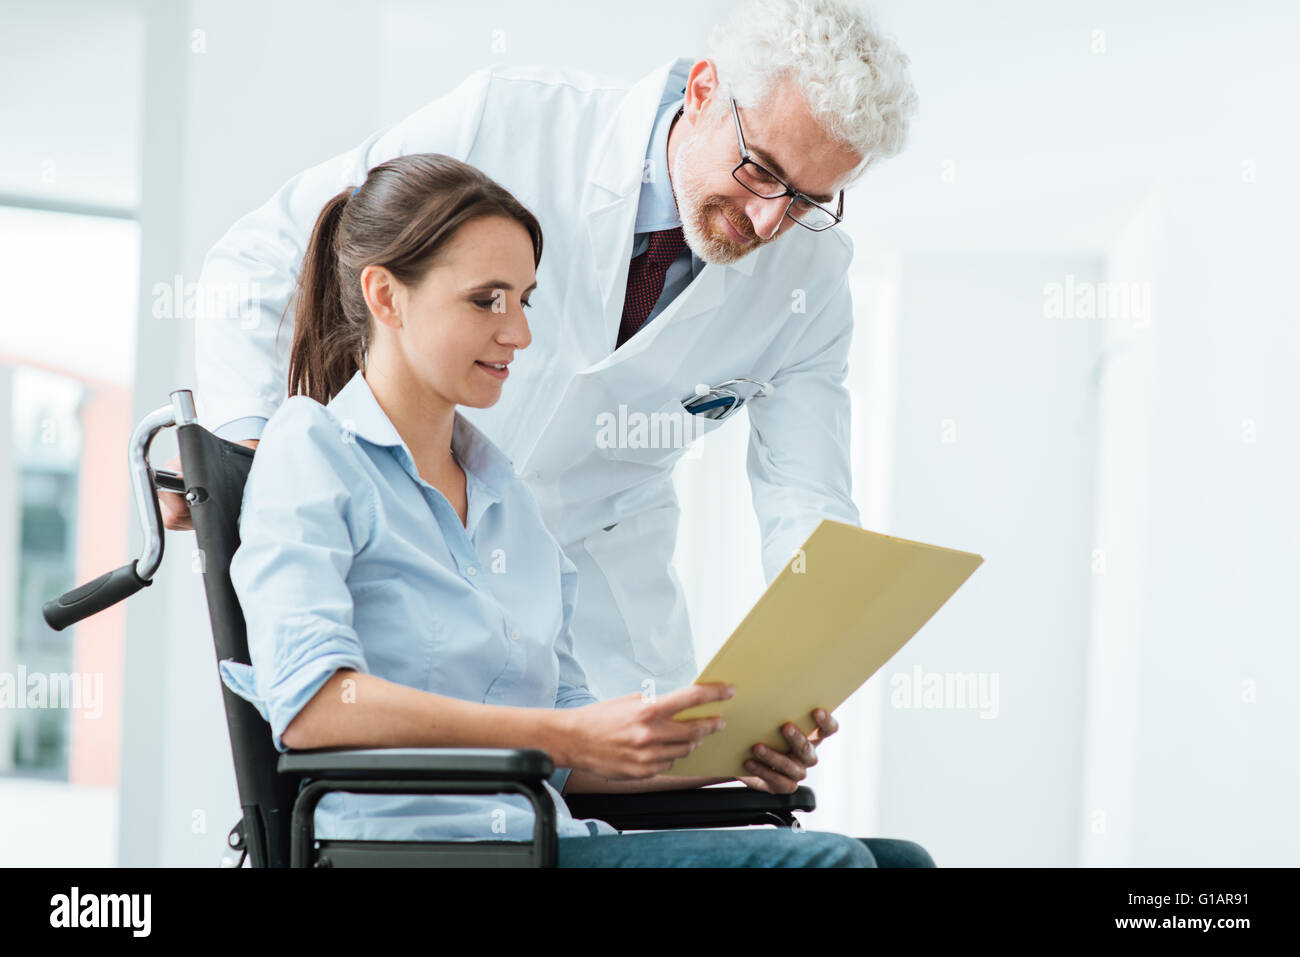 Médecin et patient de l'examen d'un fichier avec des dossiers médicaux, elle est assise sur un fauteuil roulant, d'assistance et de soins de santé concept Banque D'Images